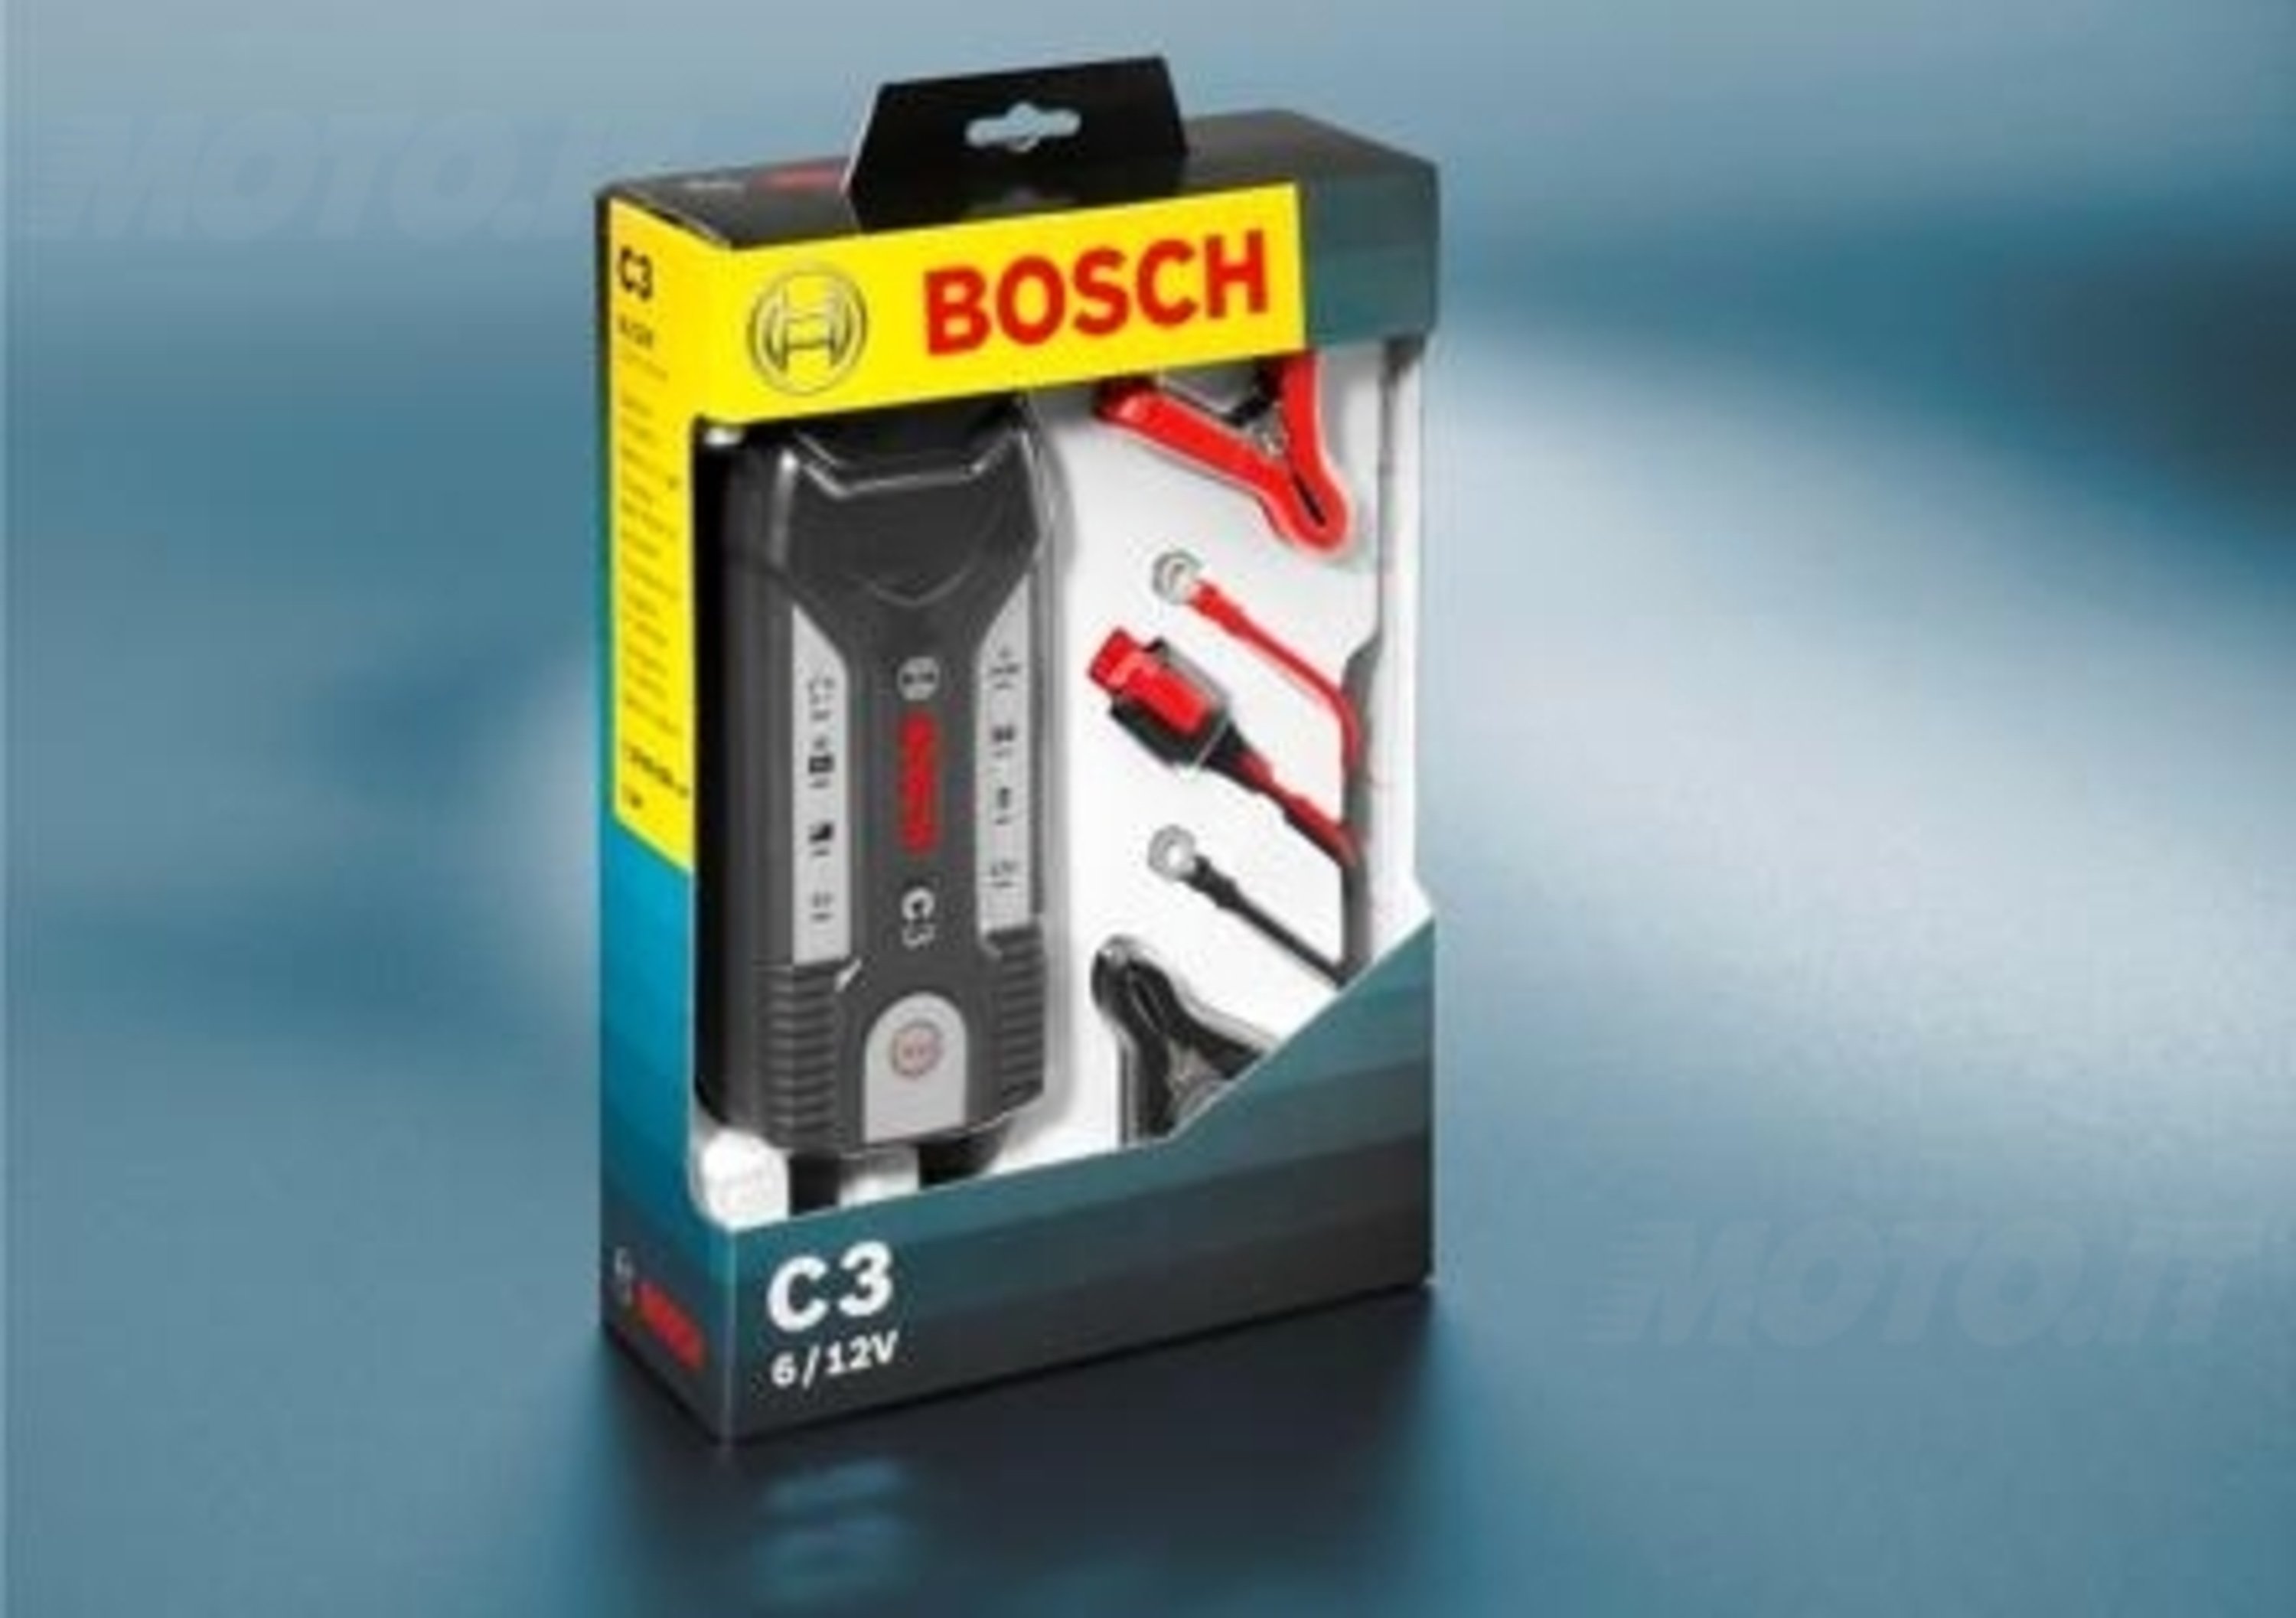 Caricabatterie Bosch C3 da 6-12 Volt